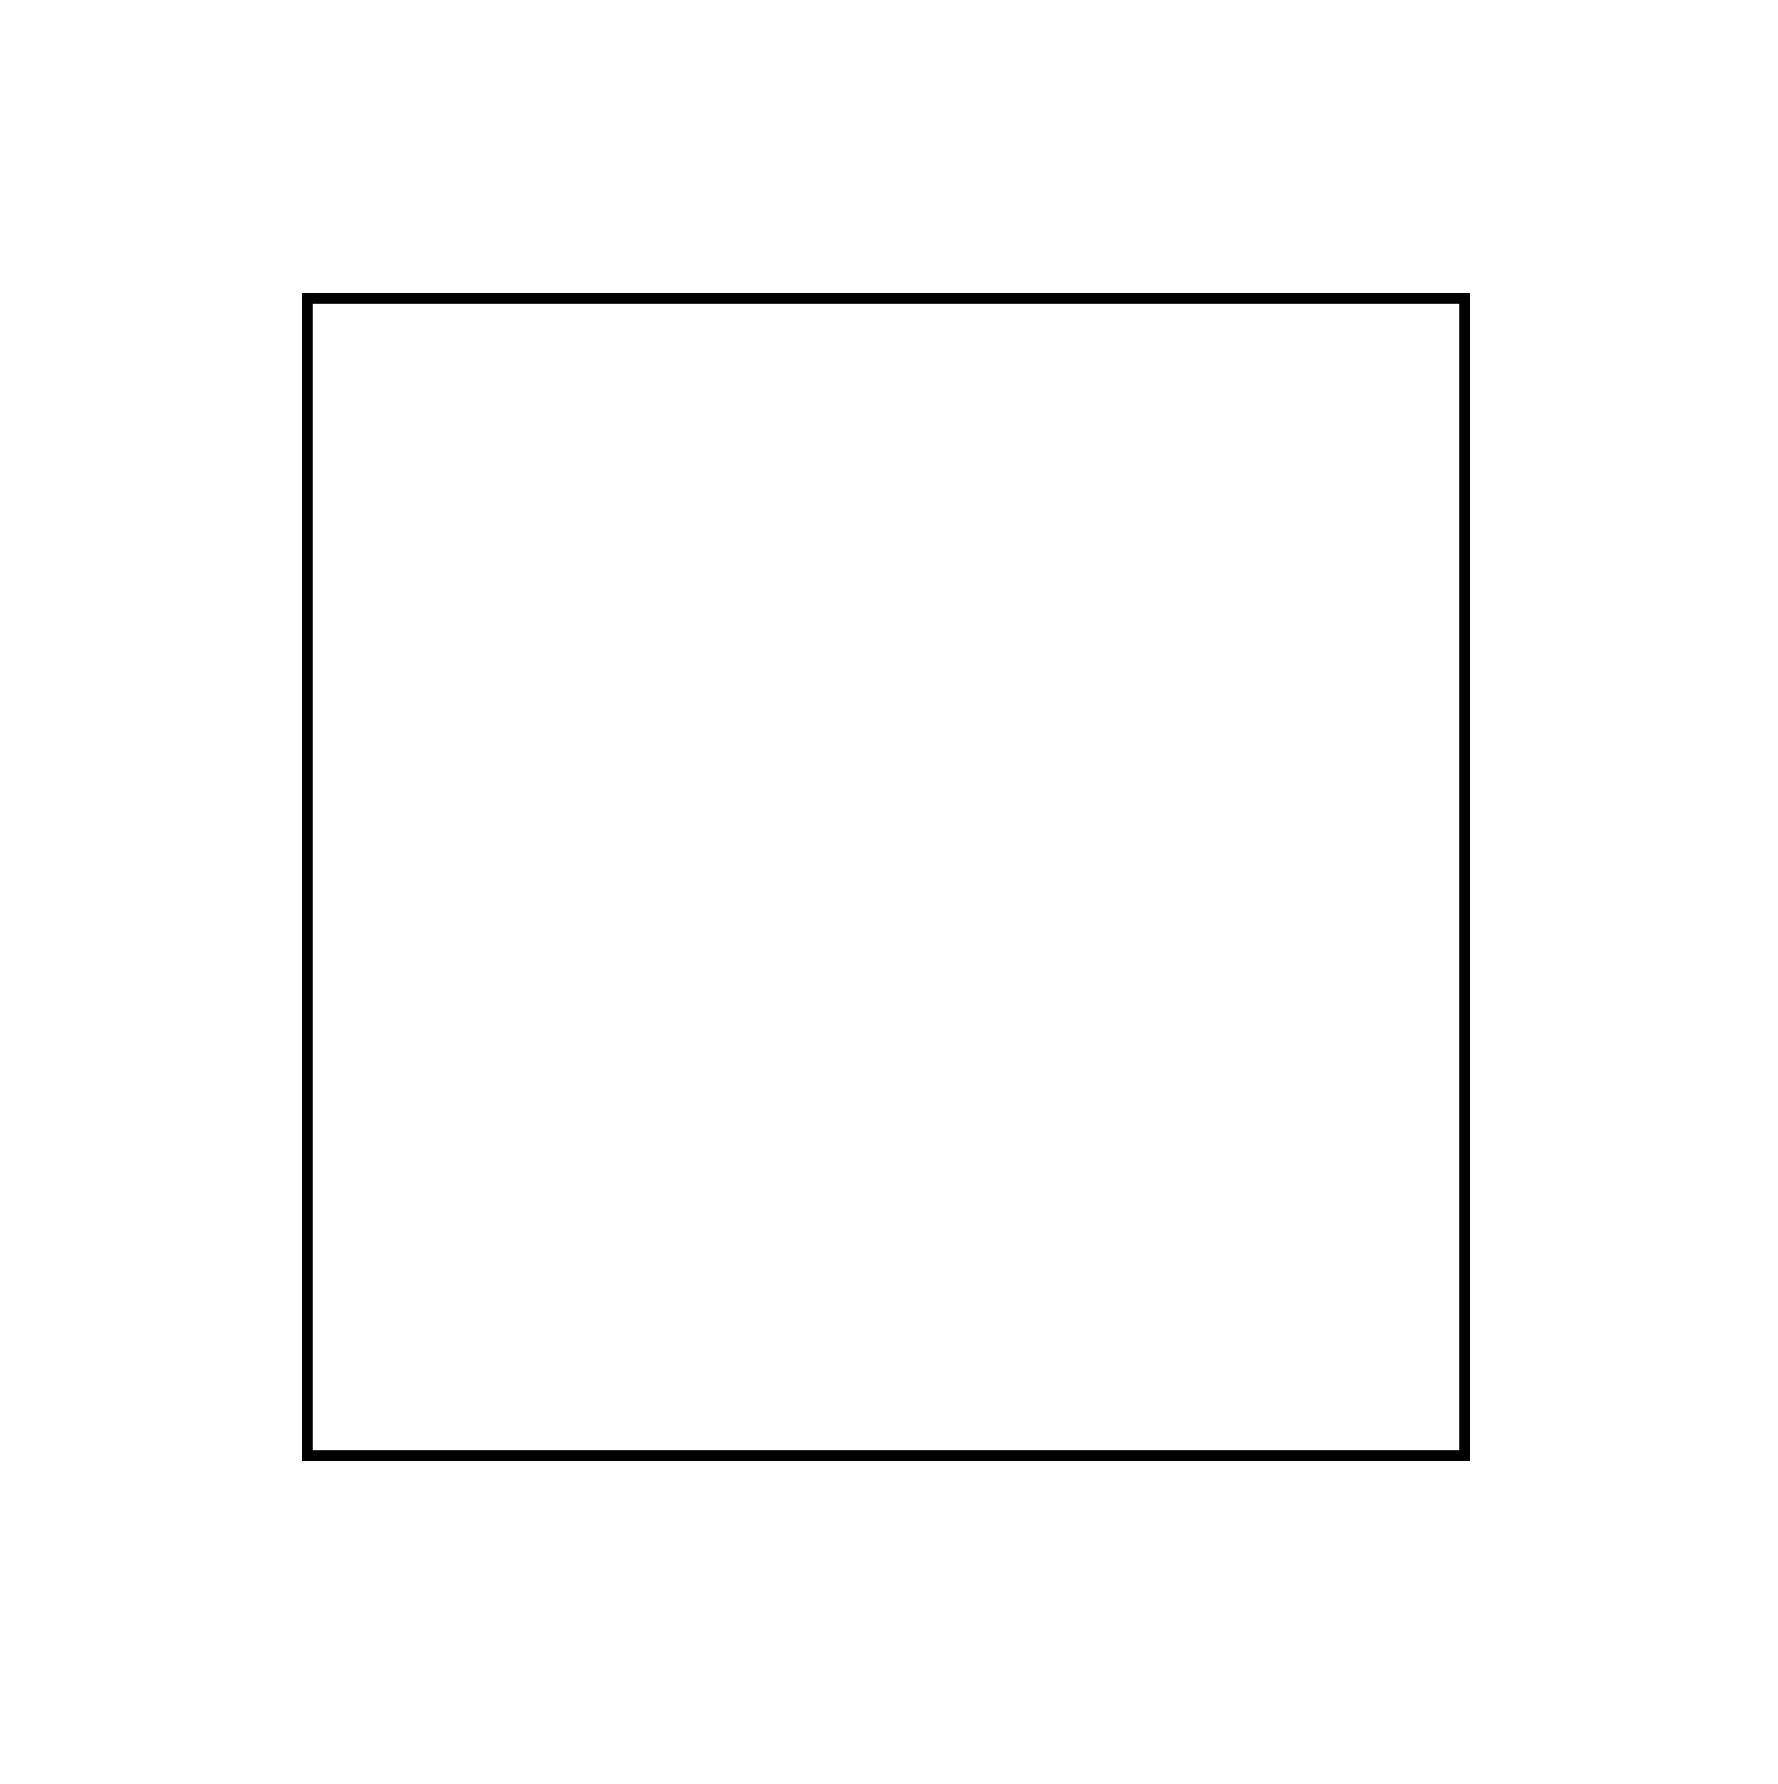 Figure geometriche - Figura geometrica piana - Quadrato poligono a 4 lati tutti uguali